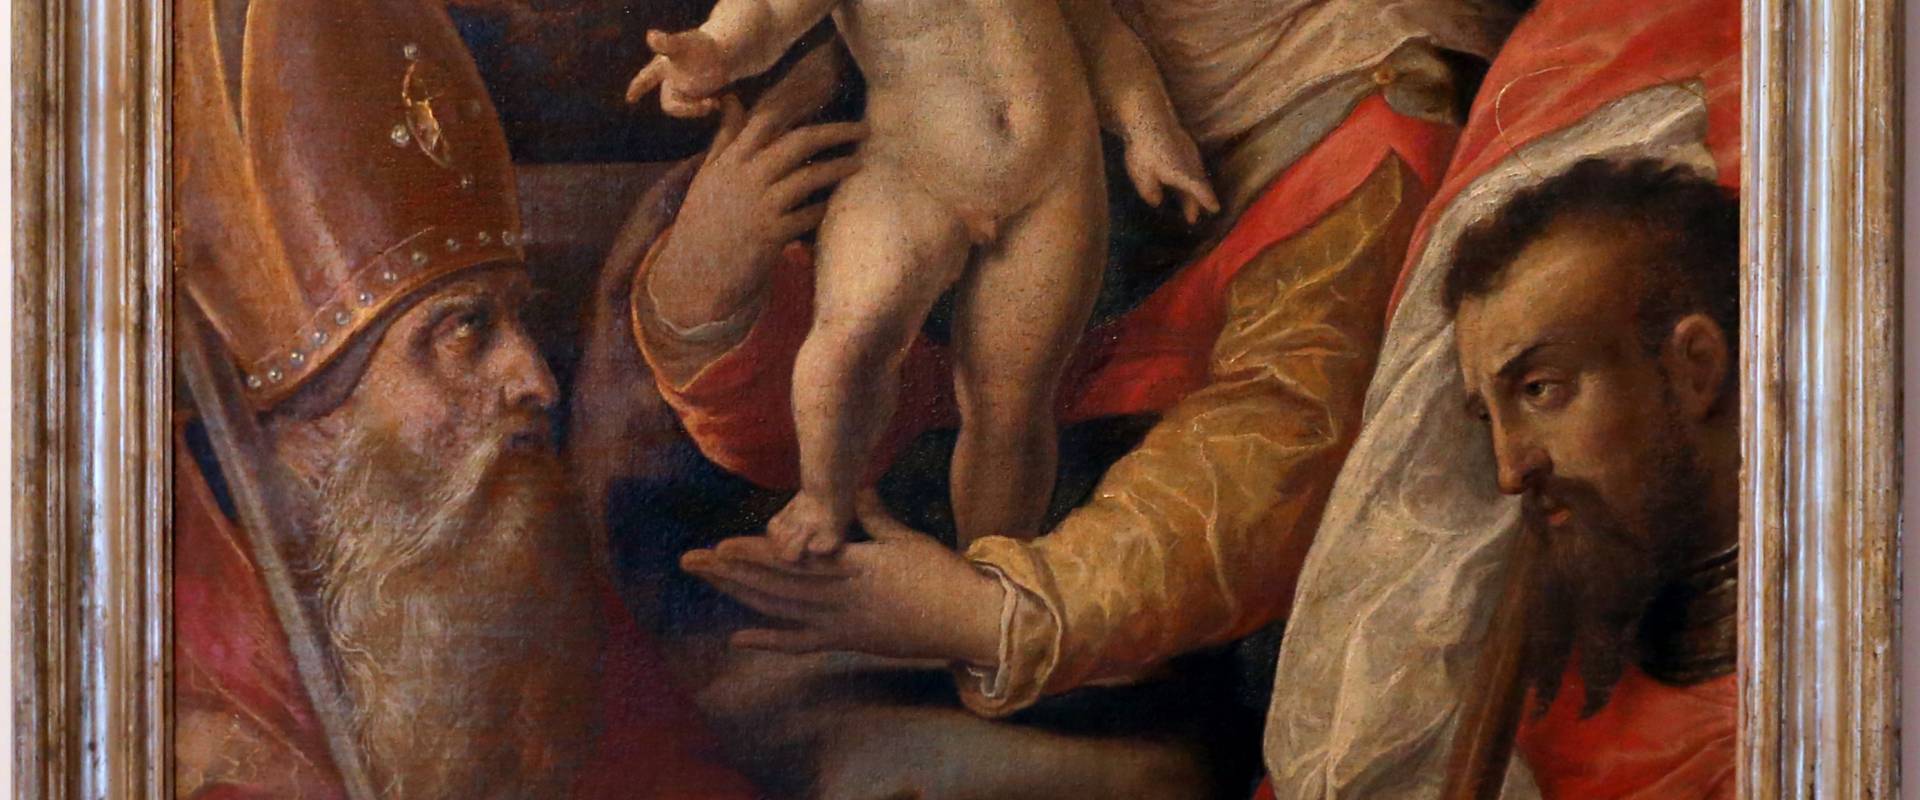 Sebastiano menzocchi, madonna col bambino tra i ss. mercuriale e valeriano, 1560-80 ca photo by Sailko